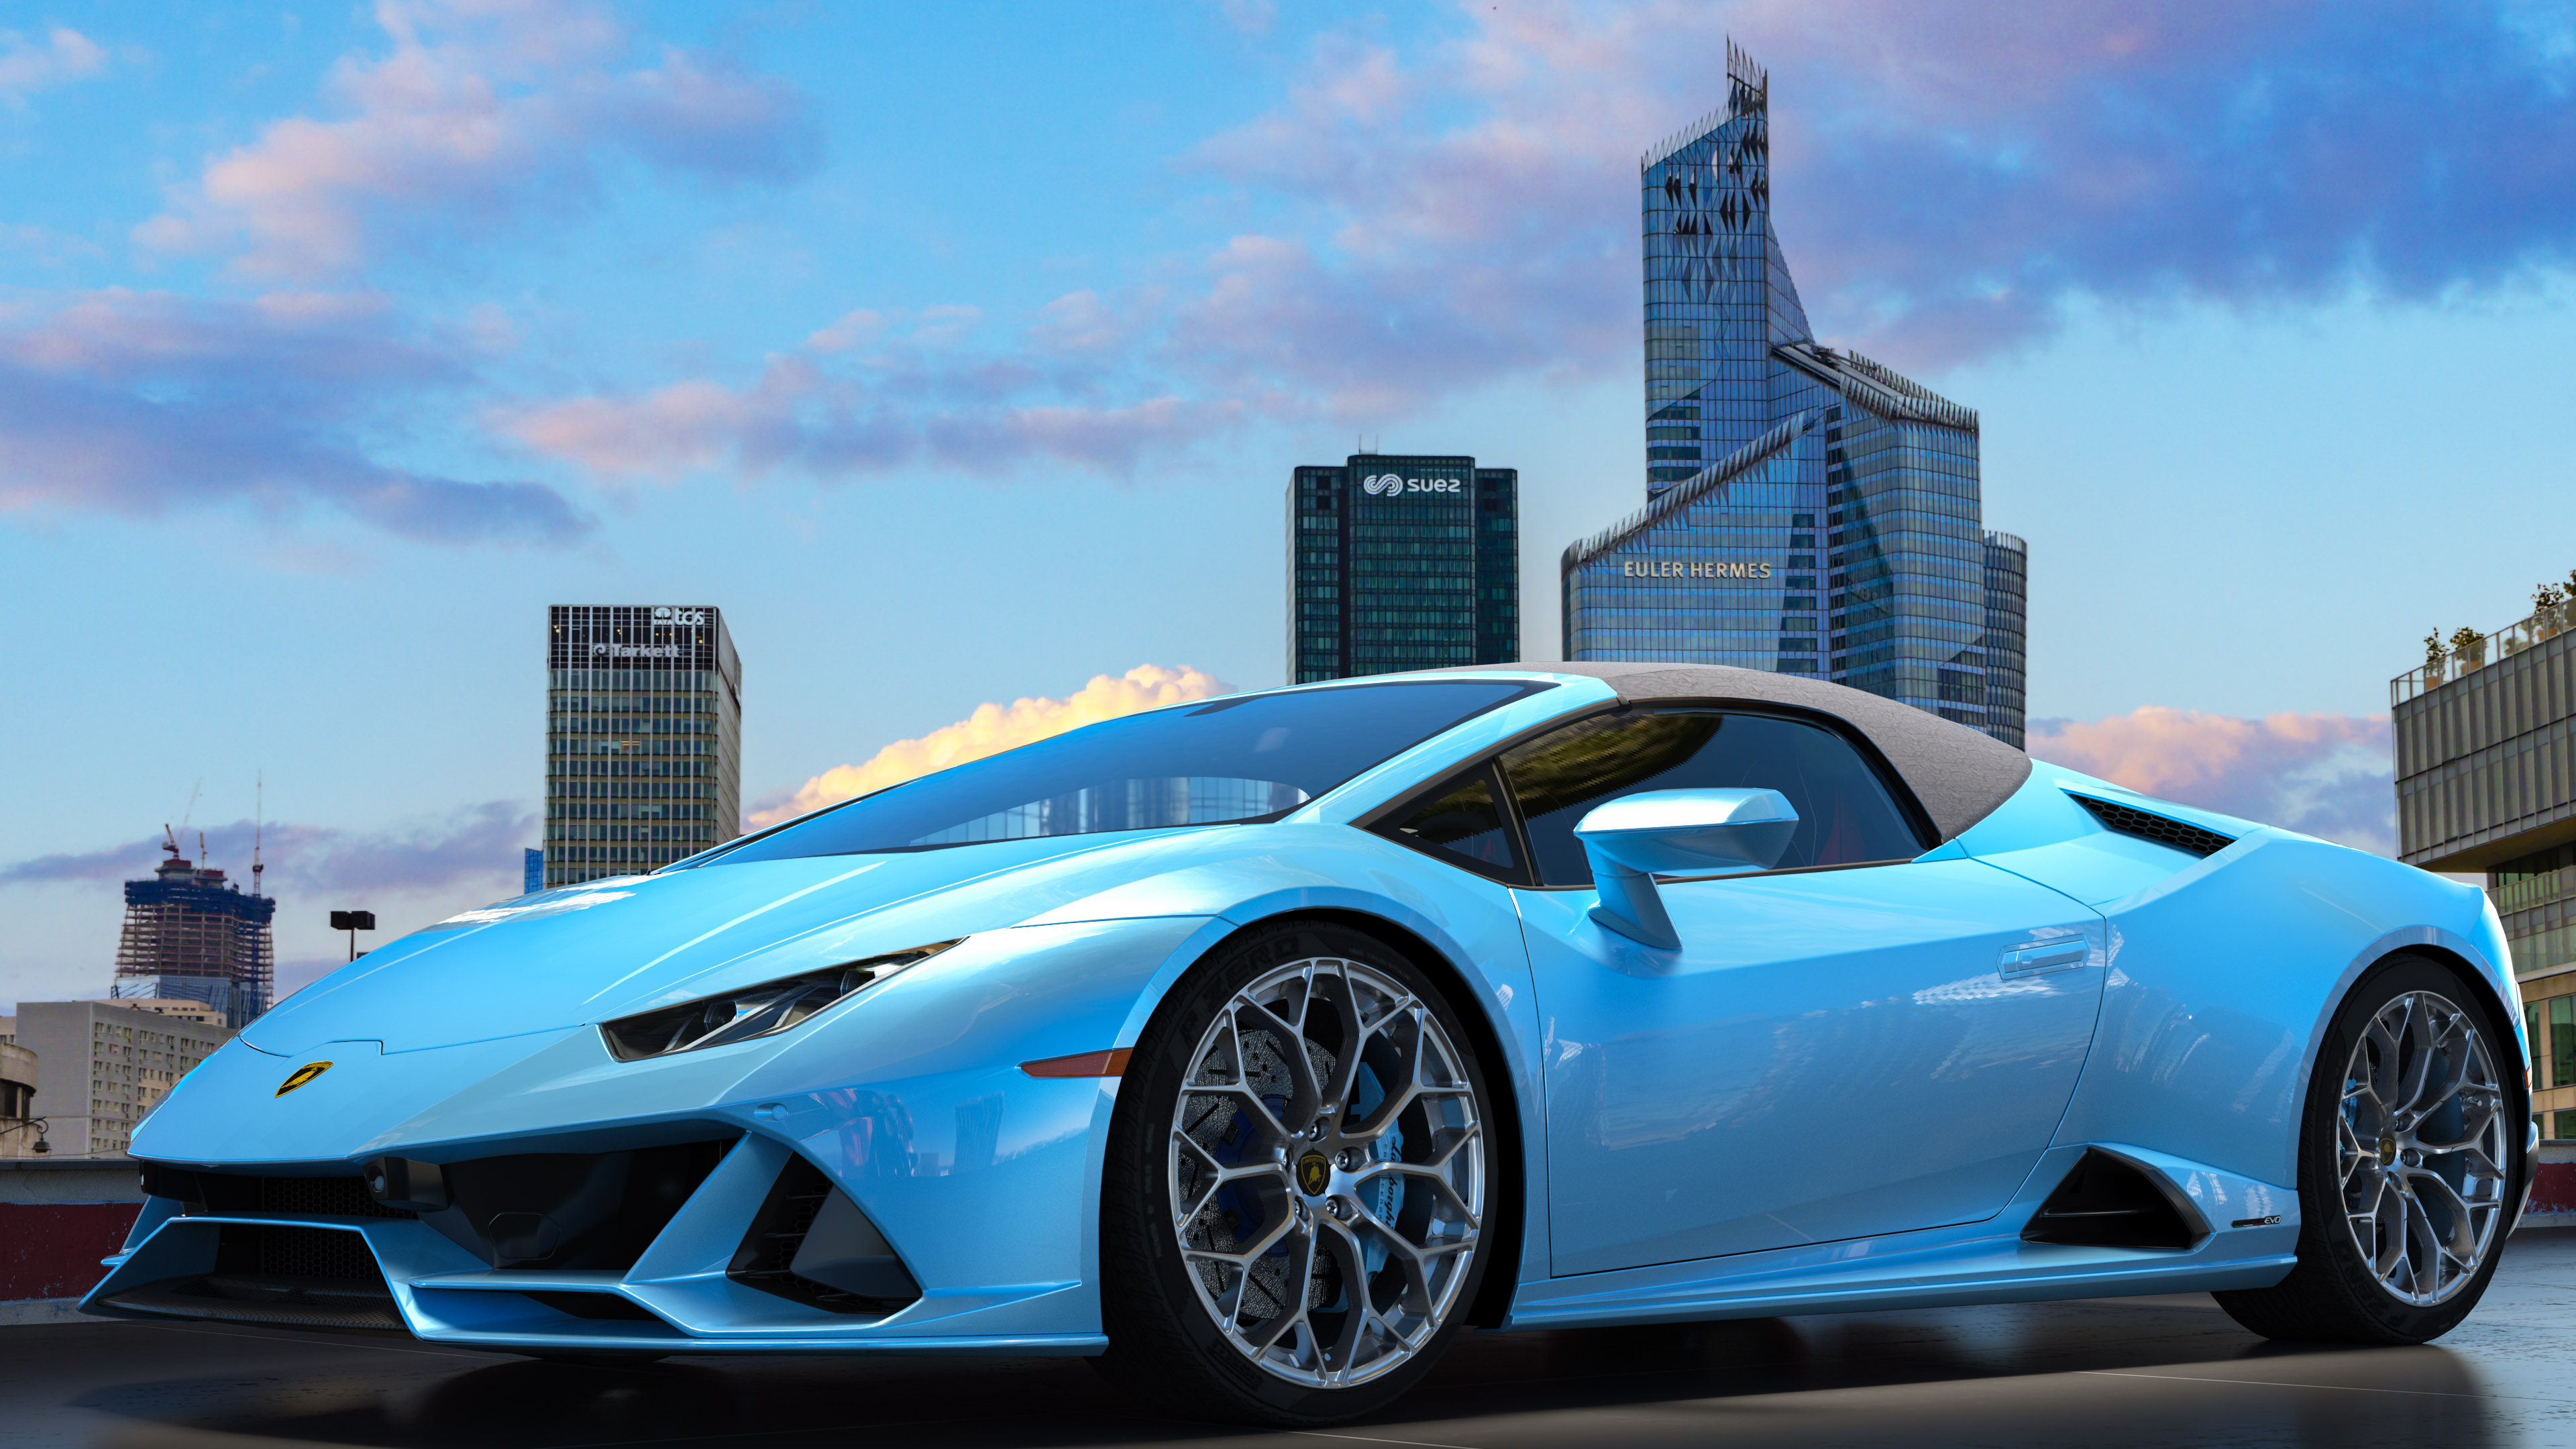 Boostez l'esthétique de votre appareil avec notre fond d'écran 4K mettant en vedette la Lamborghini Huracan, élégante et stylée.